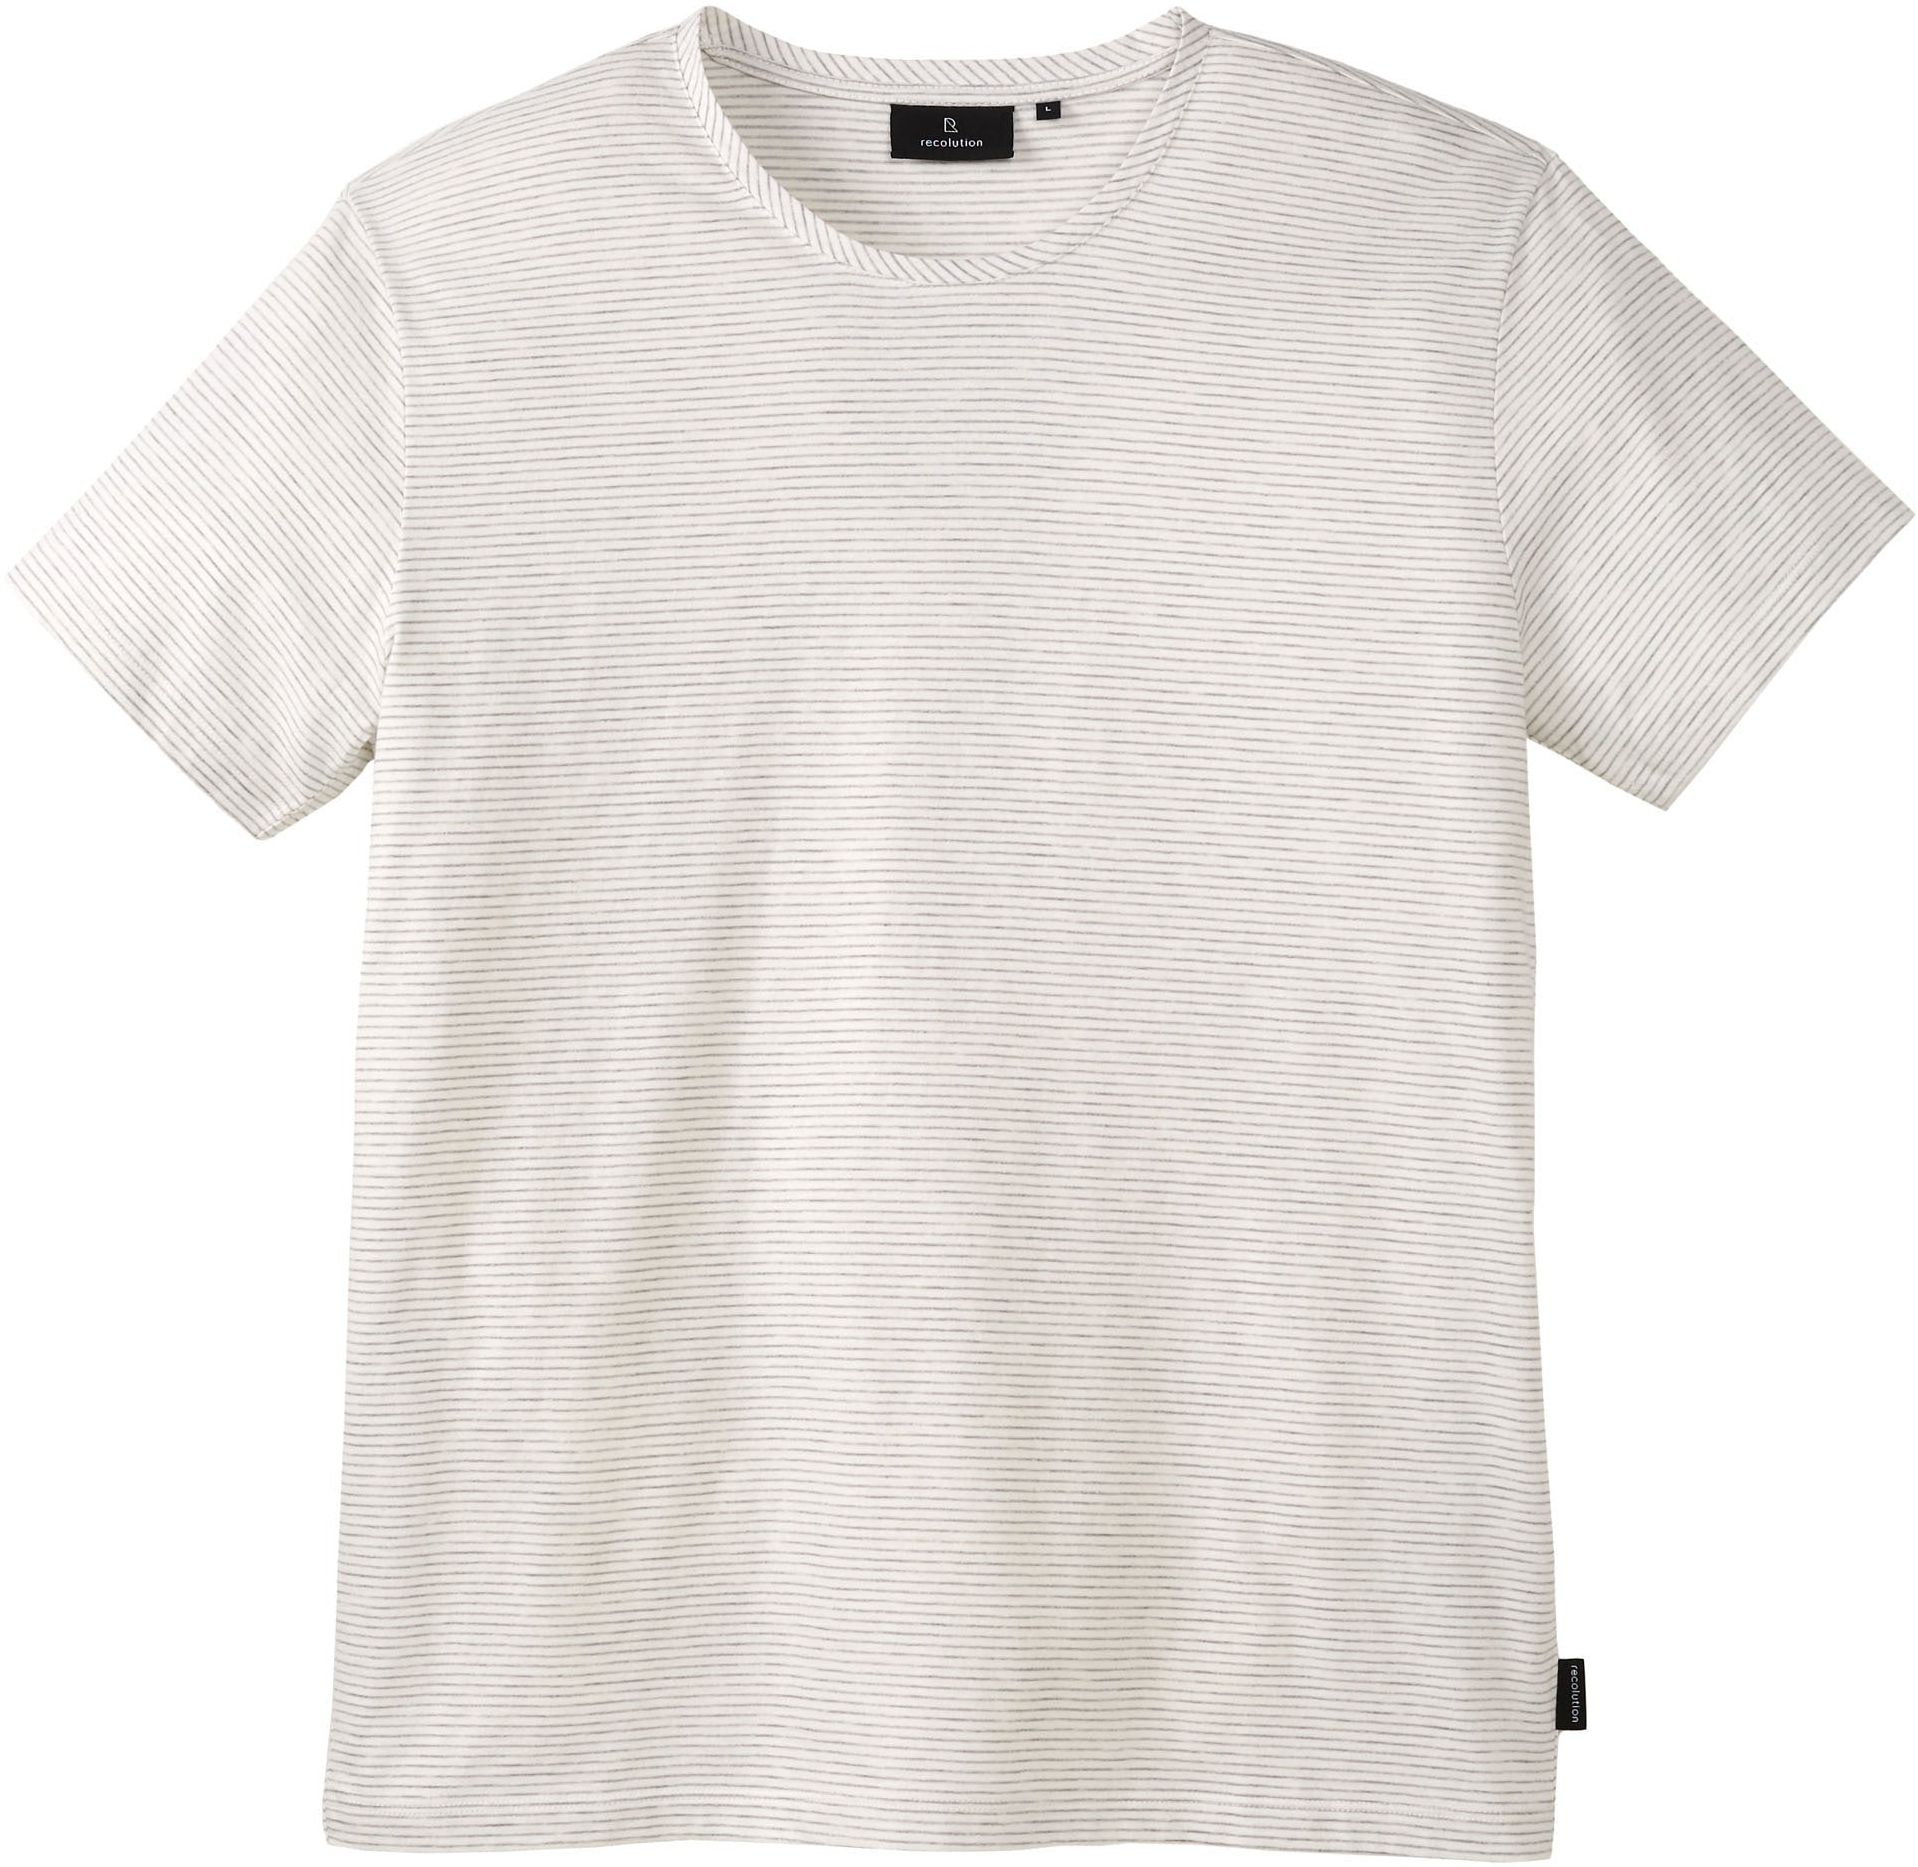 T-Shirt PANDAN STRIPES off white